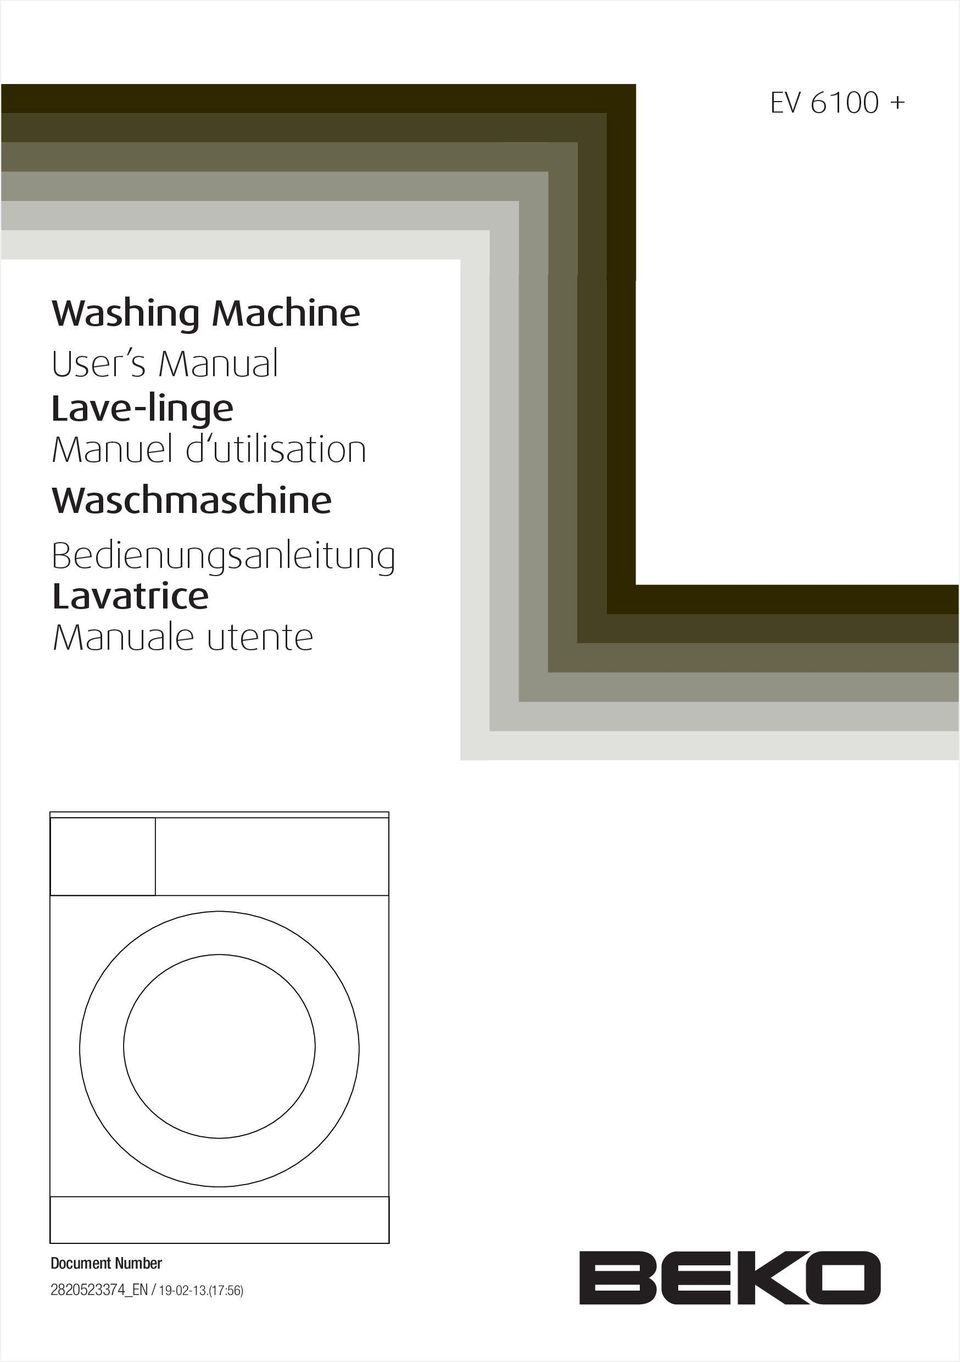 Waschmaschine Bedienungsanleitung Lavatrice